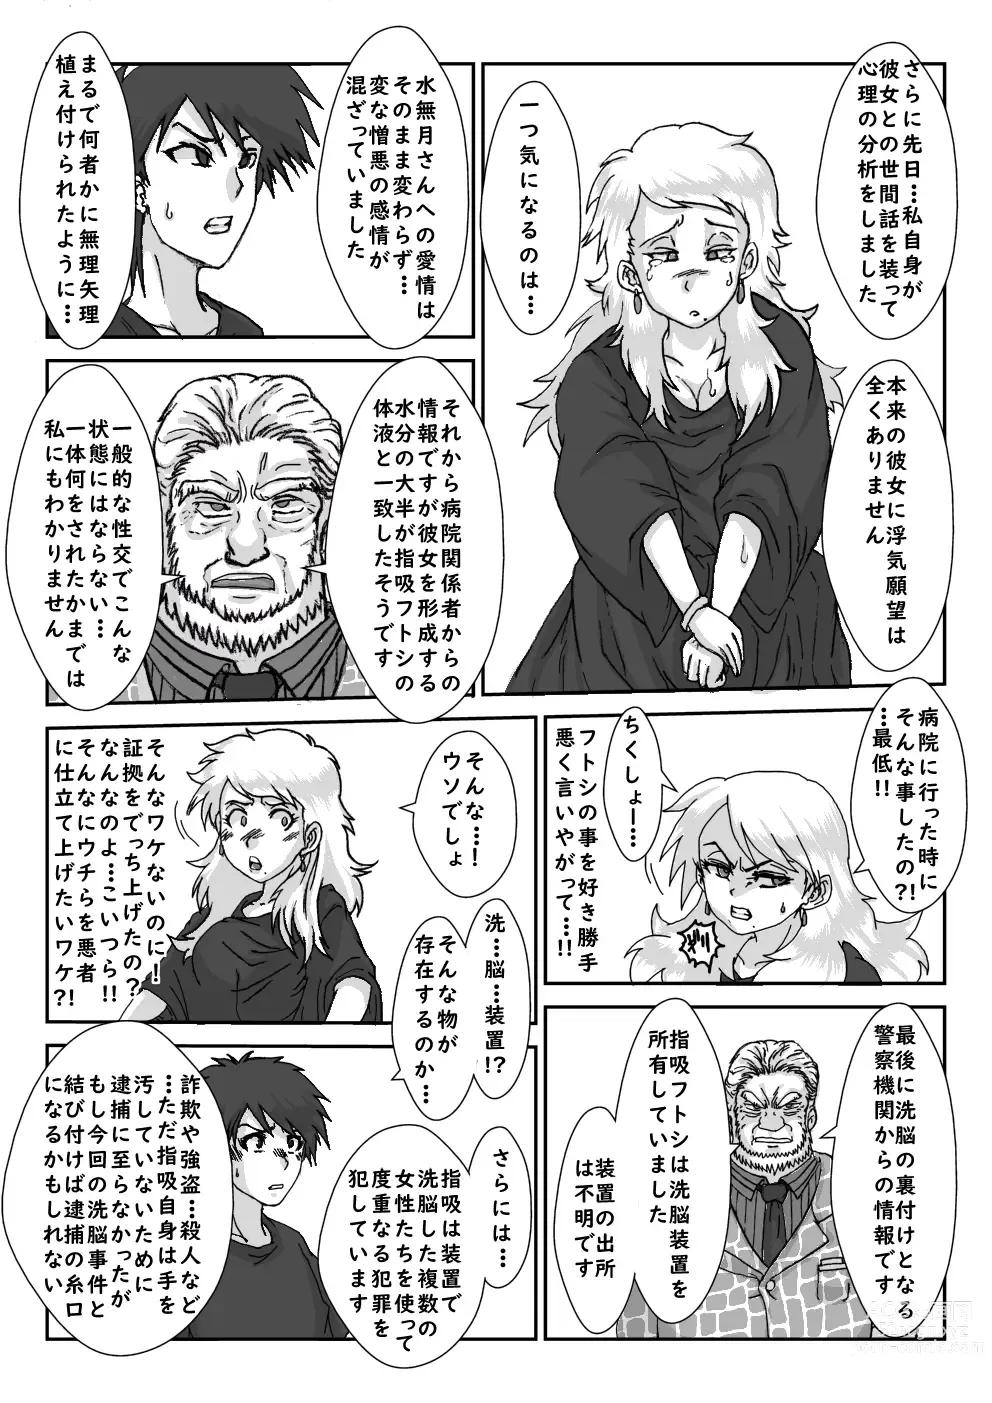 Page 39 of doujinshi Sennou